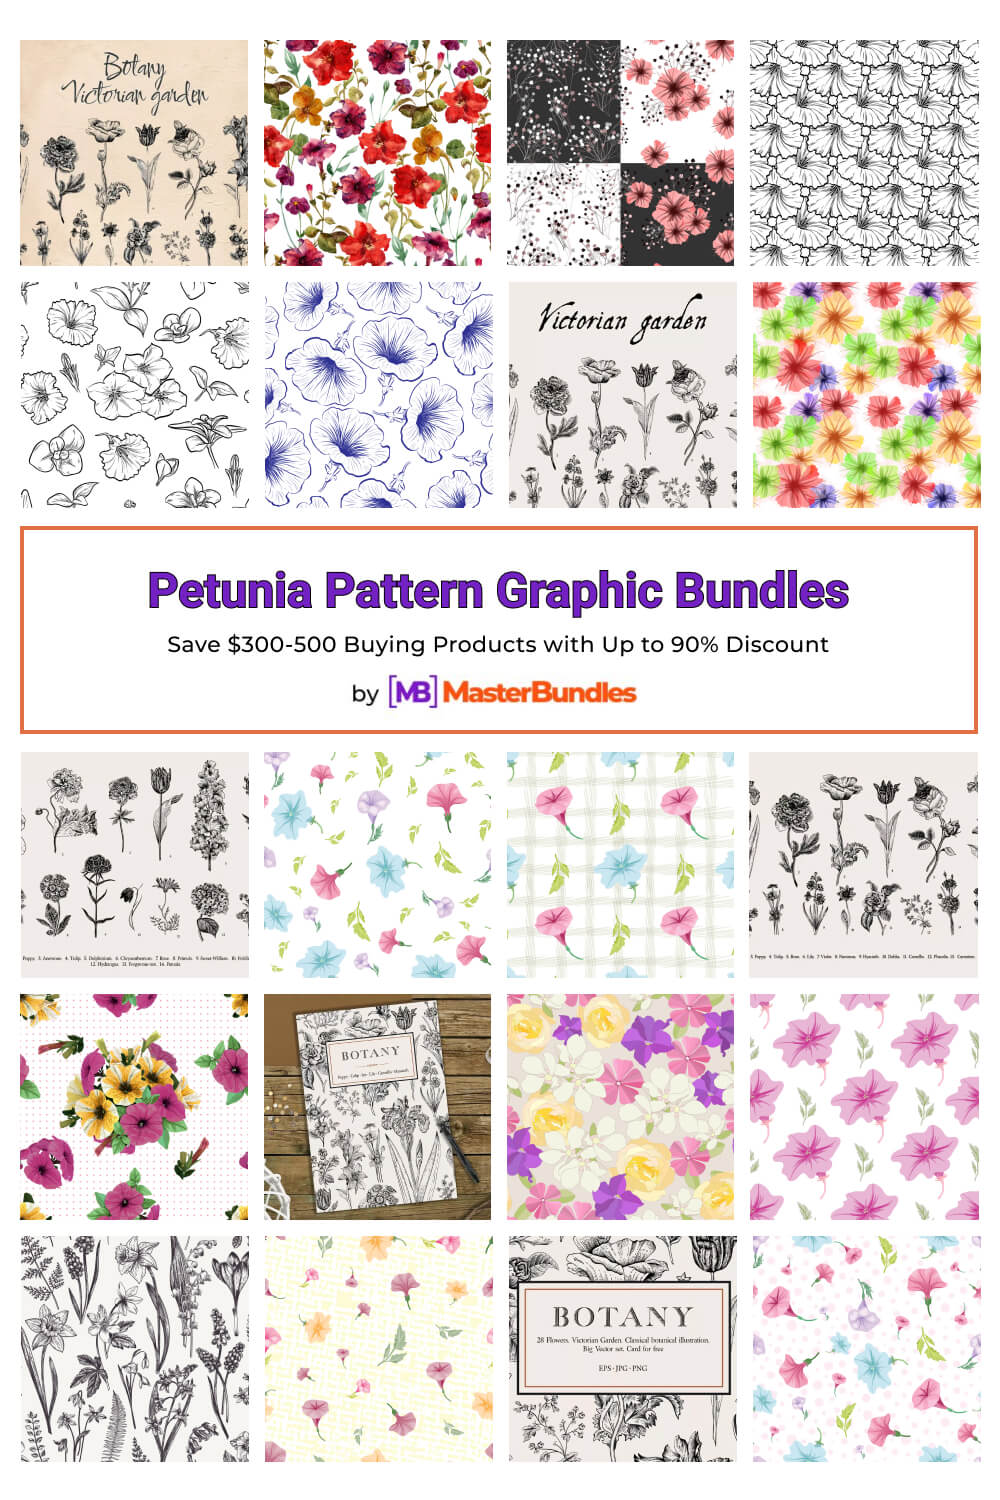 petunia pattern graphic bundles pinterest image.